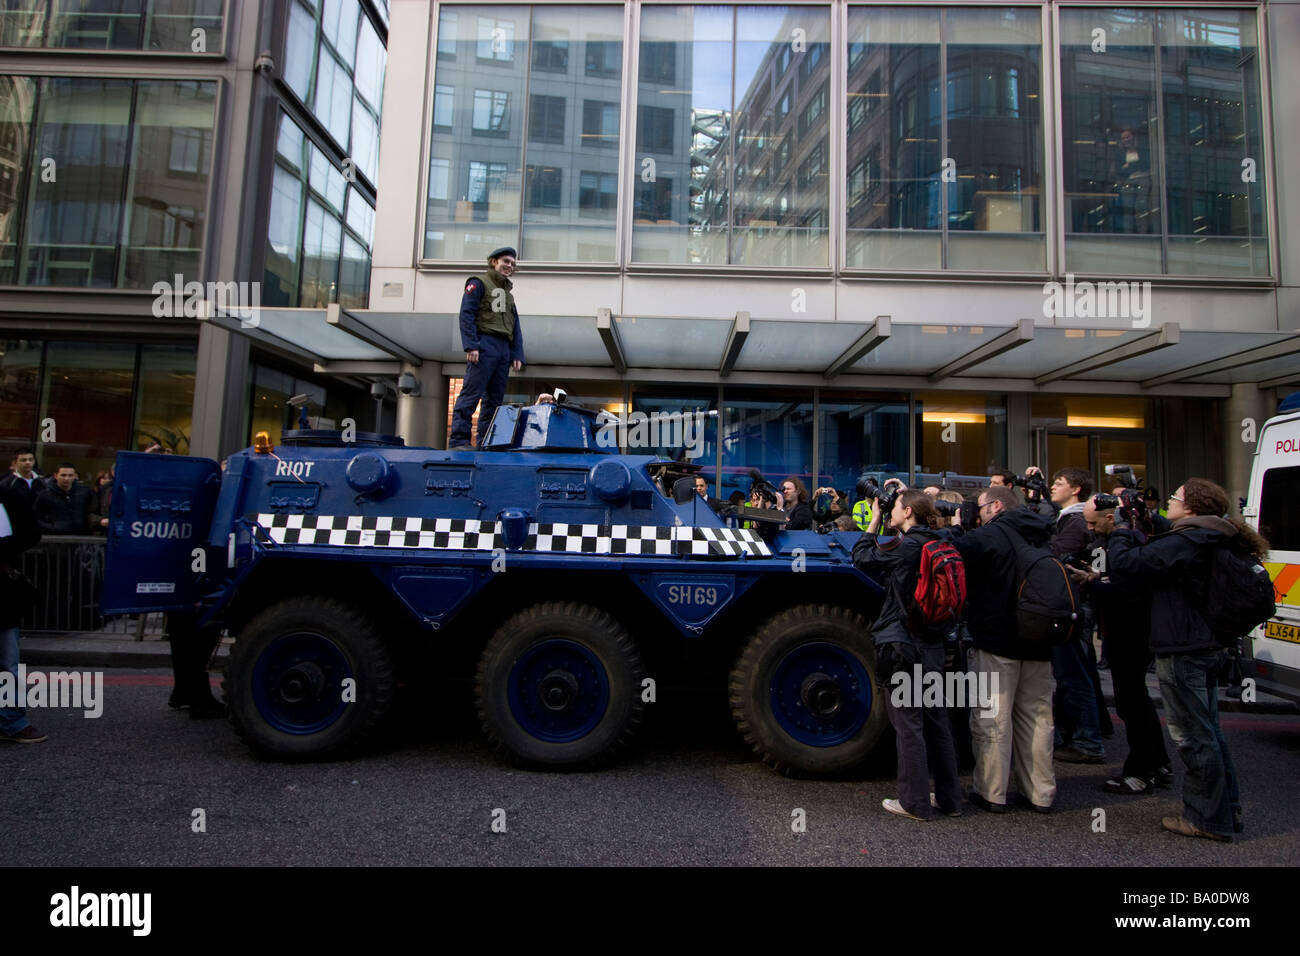 G20 de Londres, les pirates de l'espace de démonstration groupe anarchiste en faux Riot Squad van hors rbs Royal Bank of Scotland, Banque D'Images